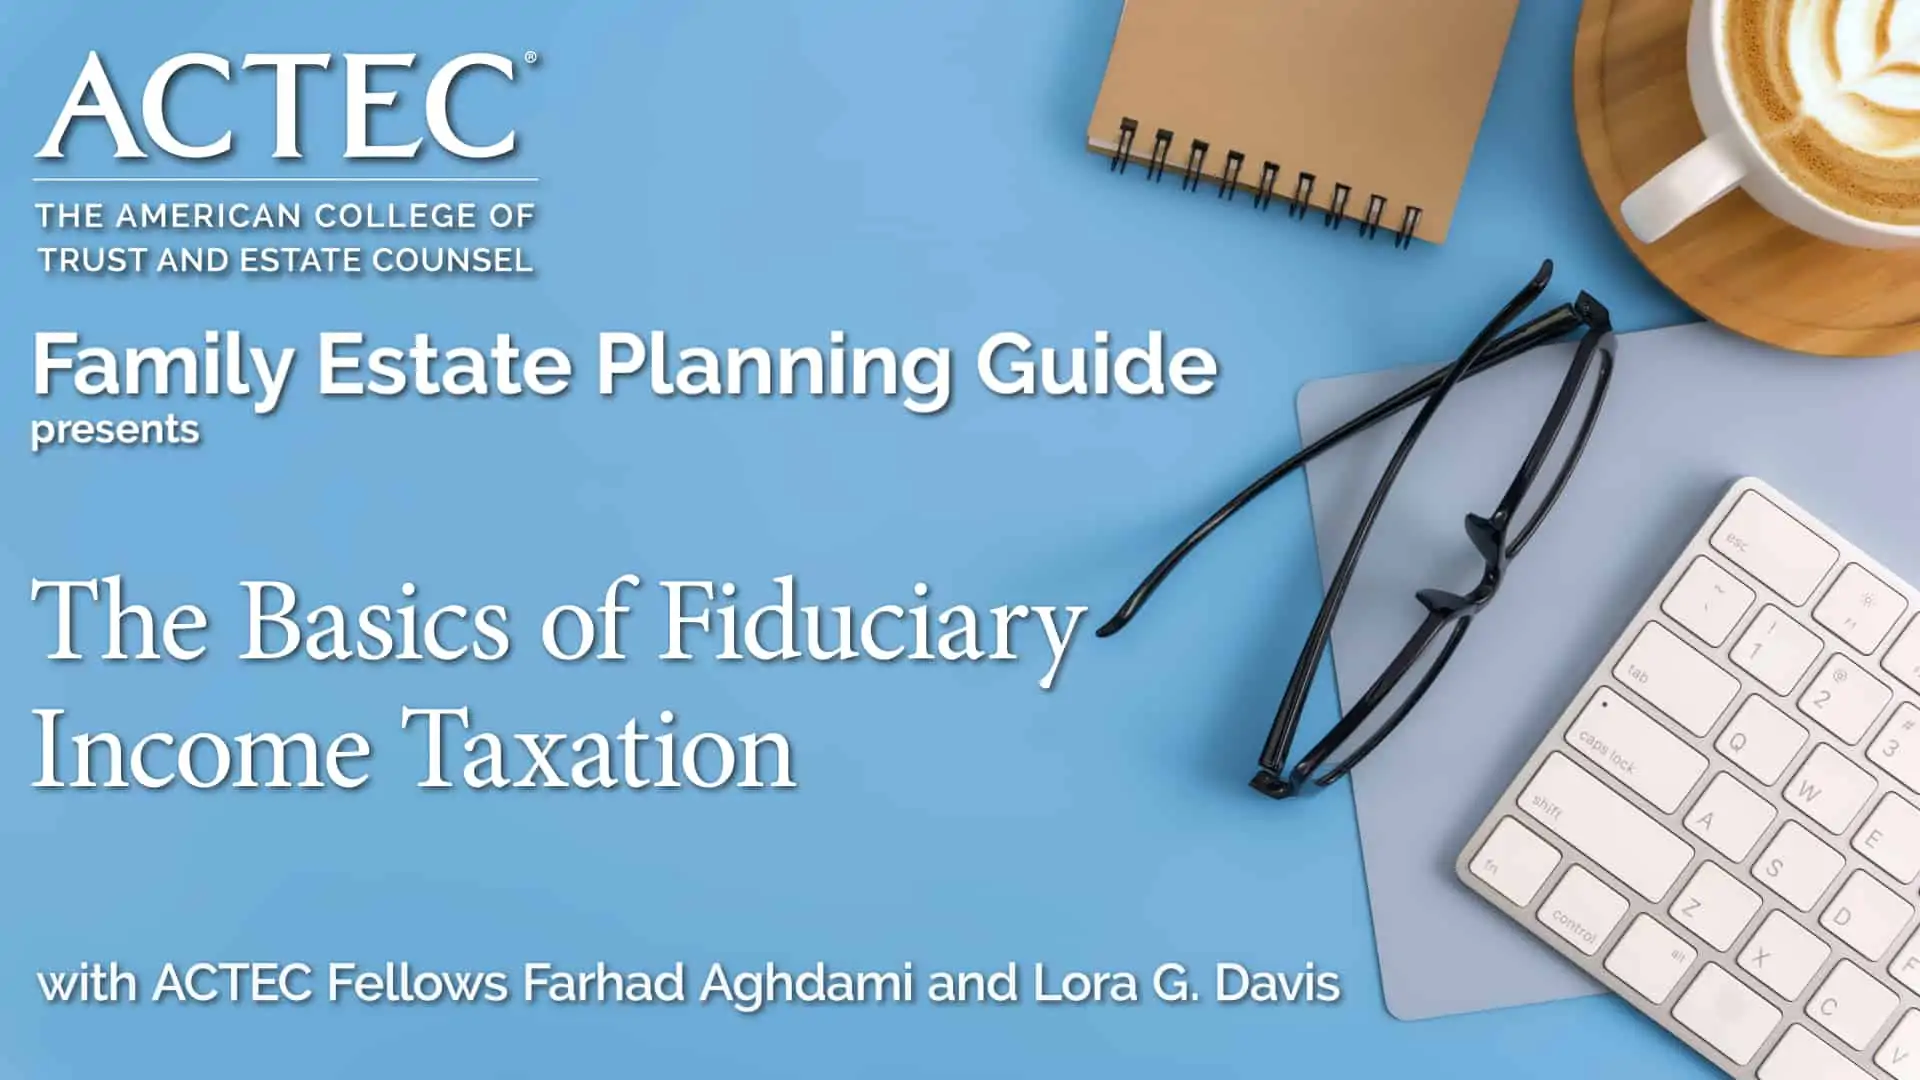 The Basics of Fiduciary Income Taxation